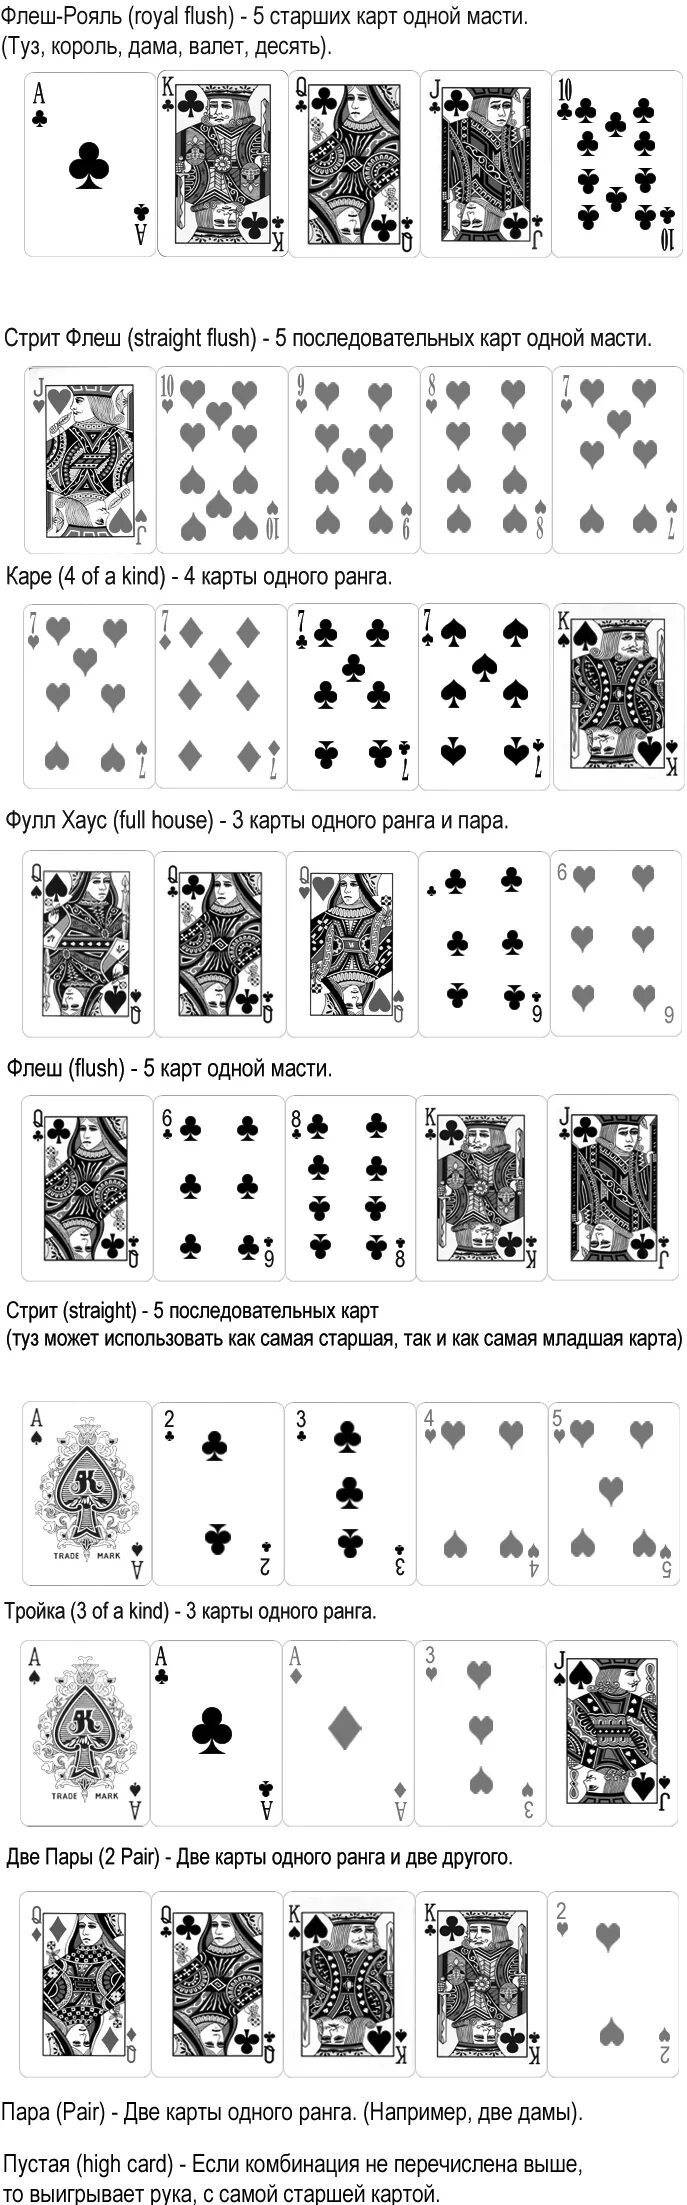 Карты одной масти. Комбинации покера по старшинству таблица. Комбинации мастей Покер масти. Карты по мастям по старшинству. Старшинство мастей в картах.